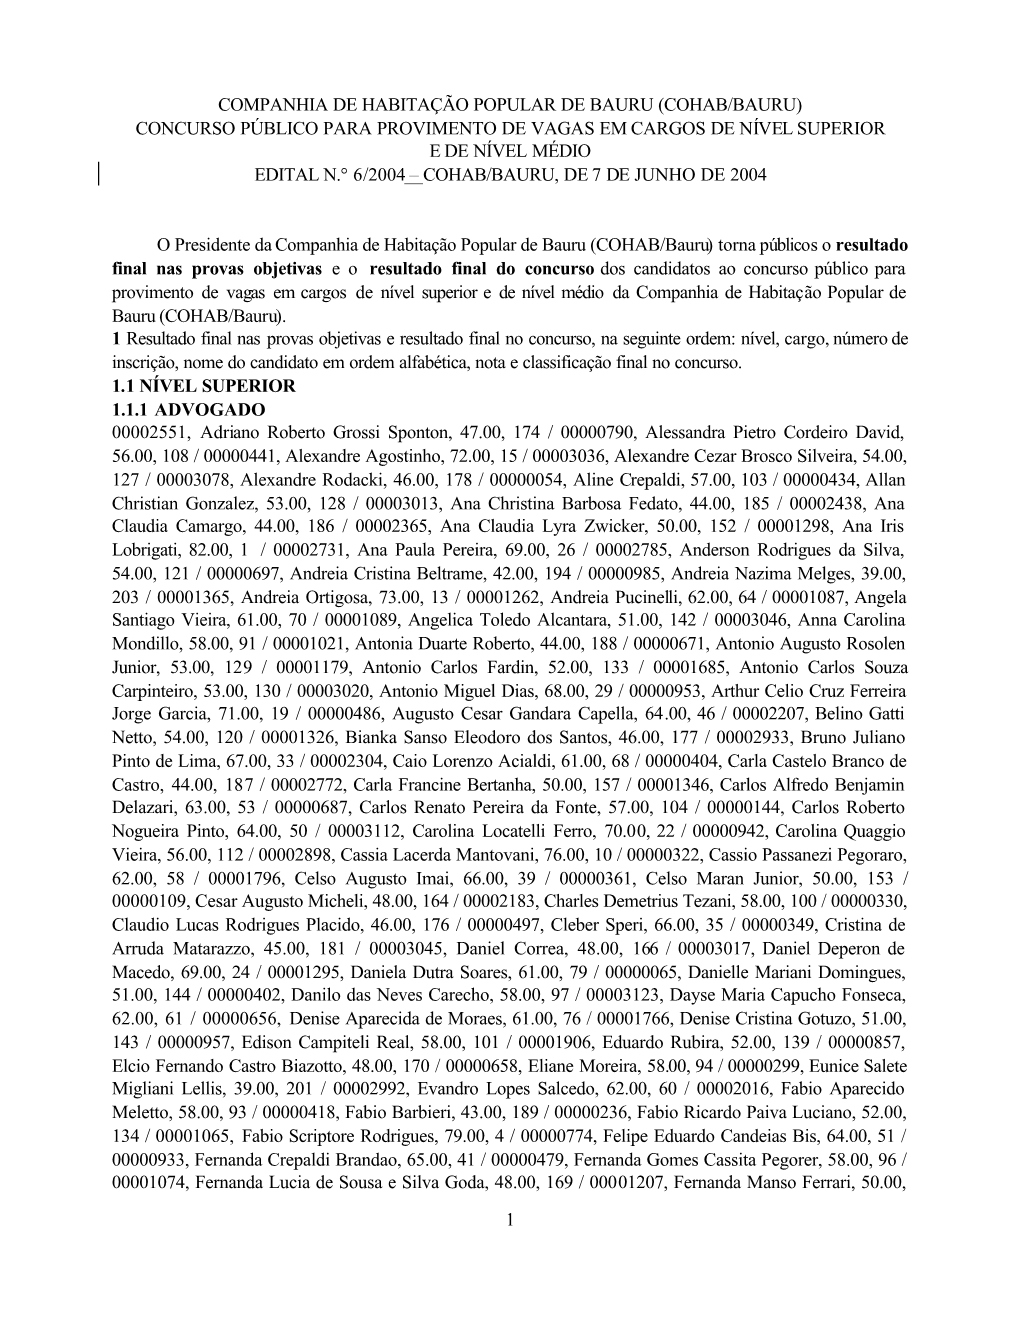 Cohab/Bauru) Concurso Público Para Provimento De Vagas Em Cargos De Nível Superior E De Nível Médio Edital N.° 6/2004 – Cohab/Bauru, De 7 De Junho De 2004